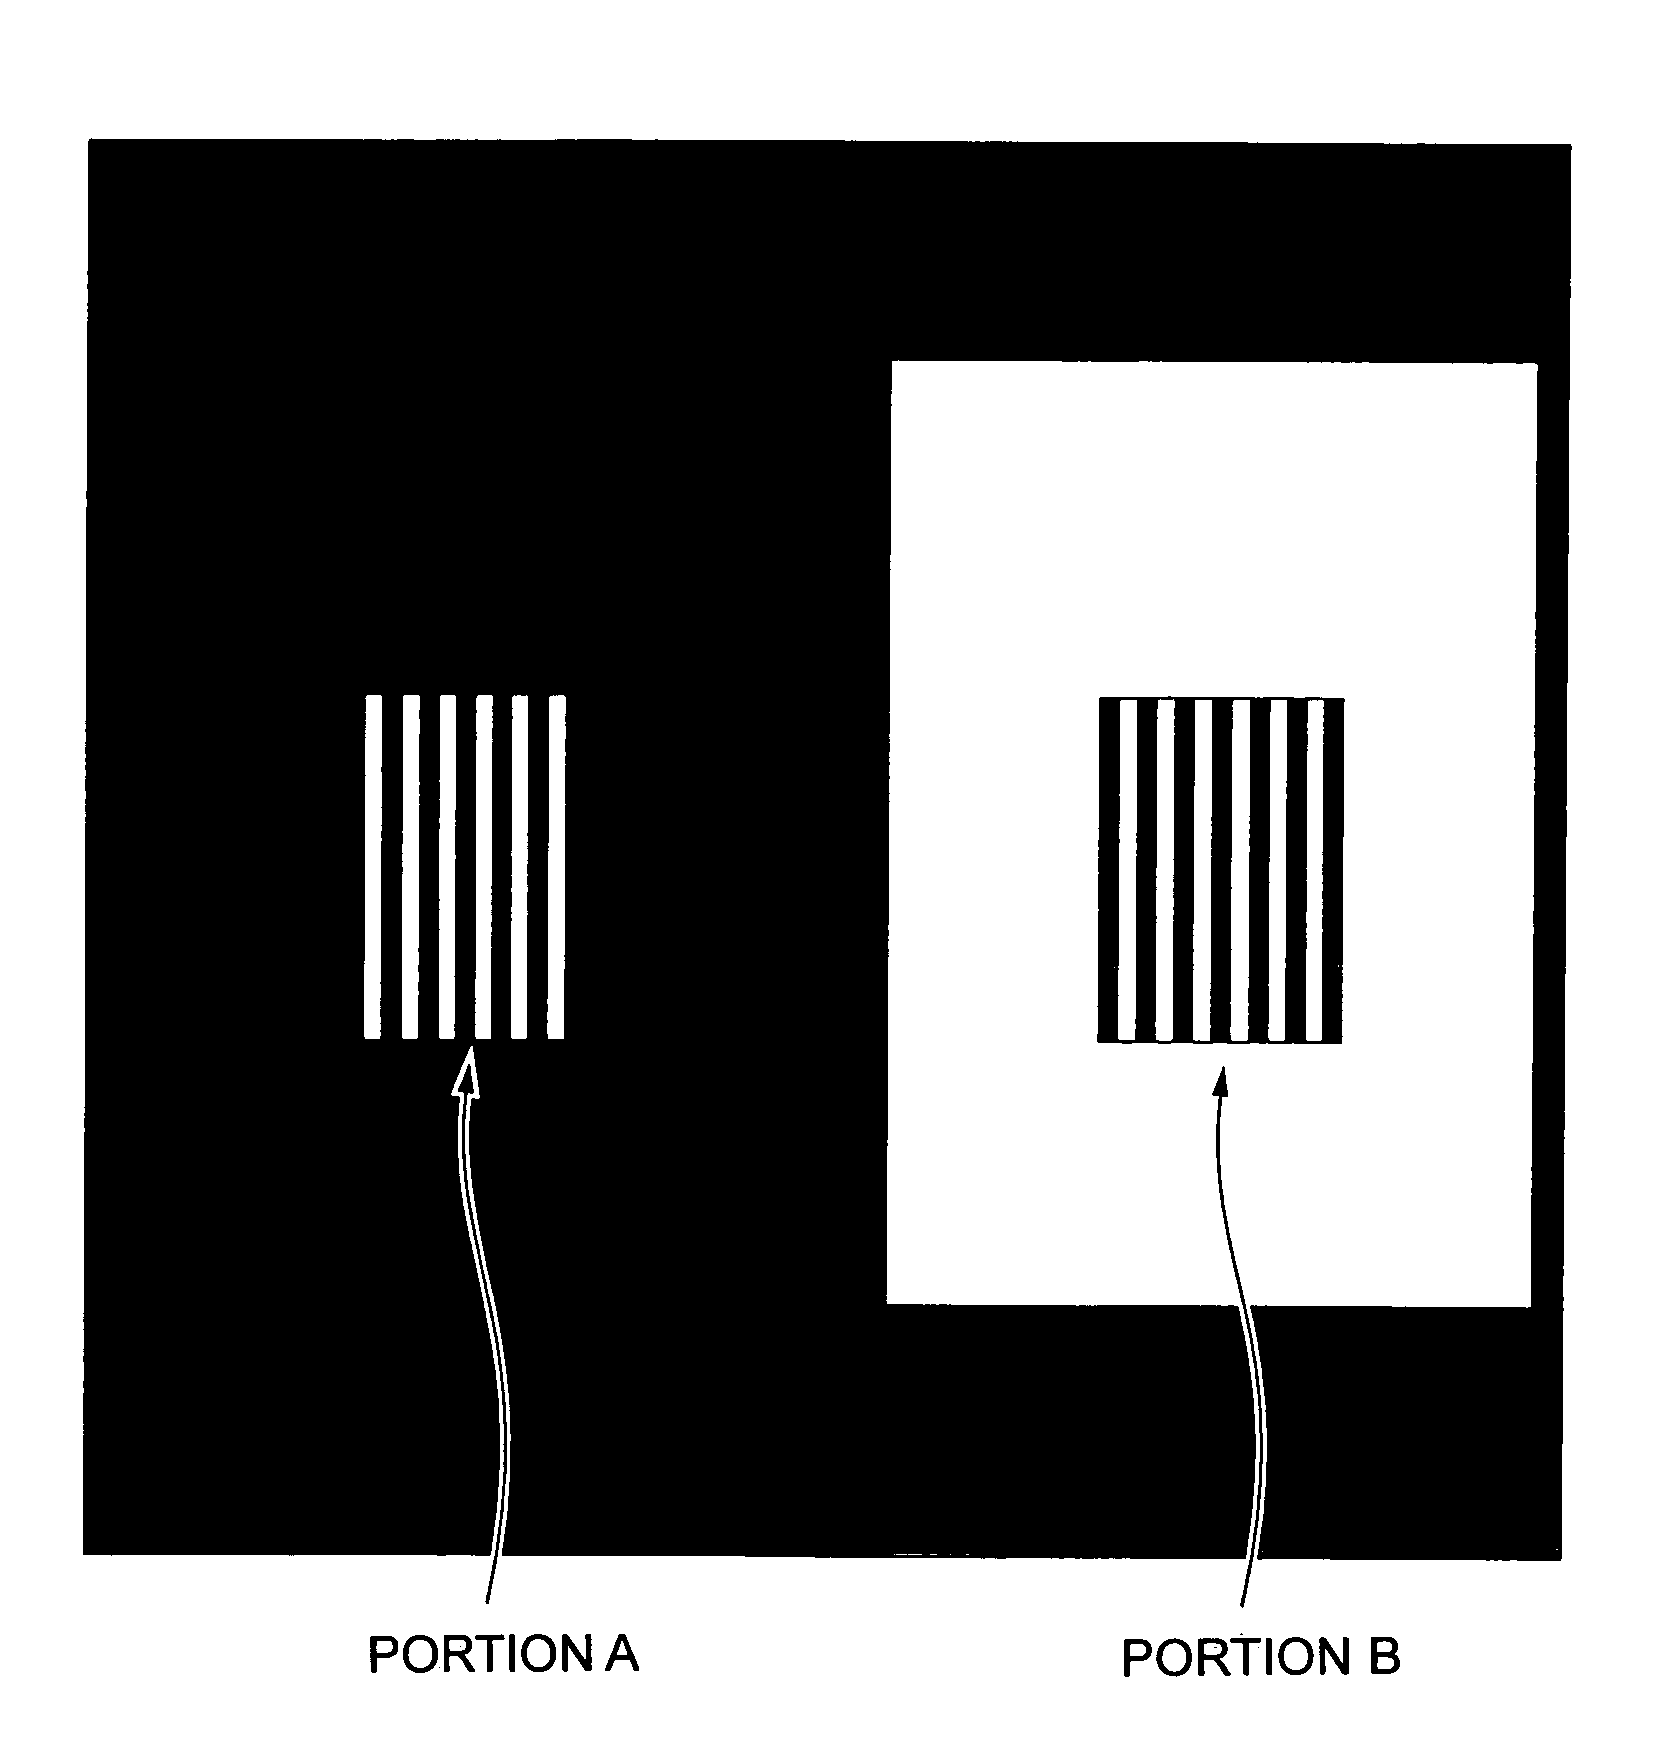 Photomask producing method and photomask blank